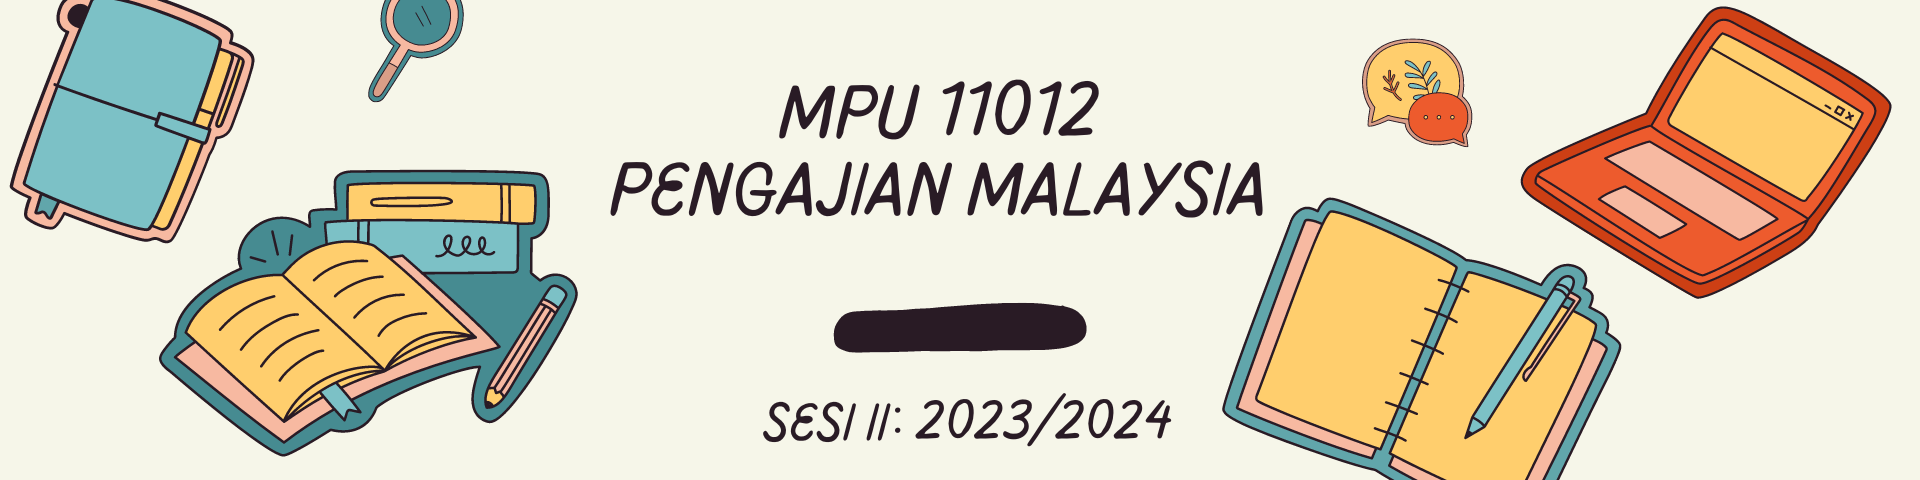 MPU11012 PENGAJIAN MALAYSIA